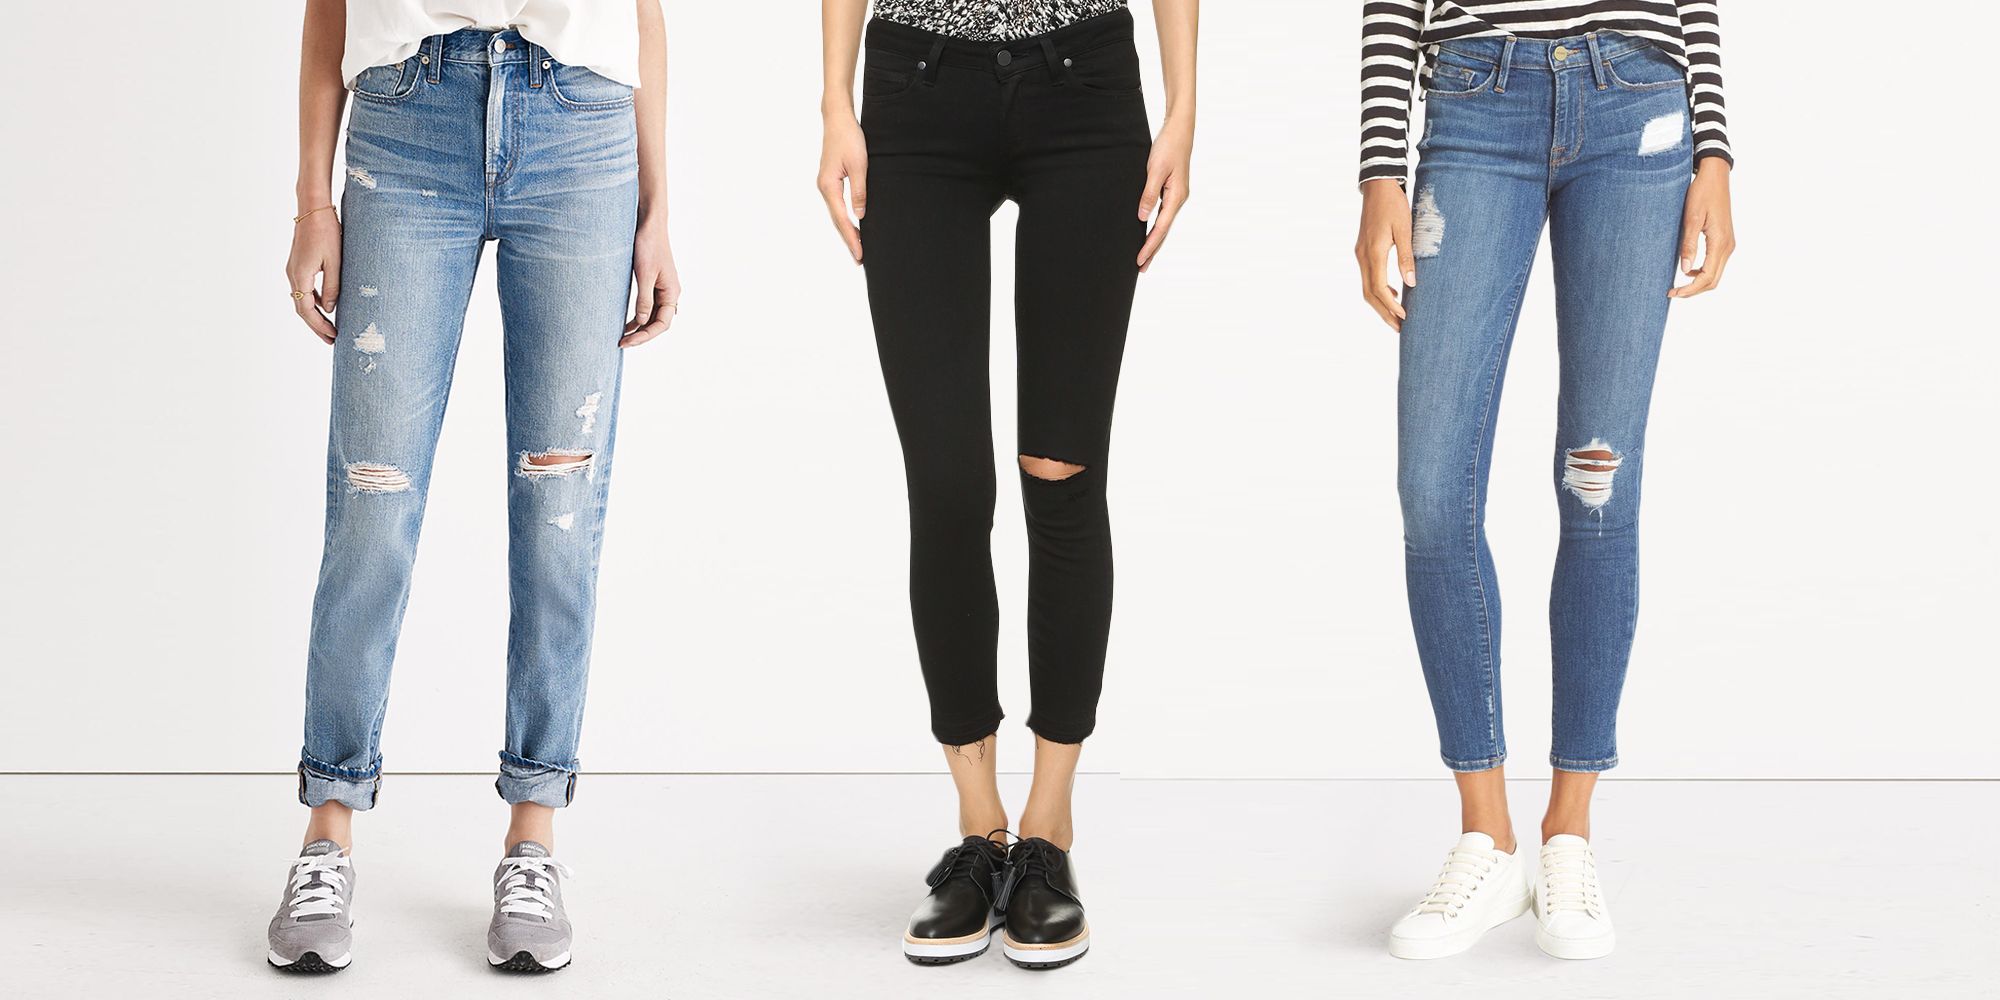 Women's Jeans, Skinny, Boyfriend & Ripped Jeans